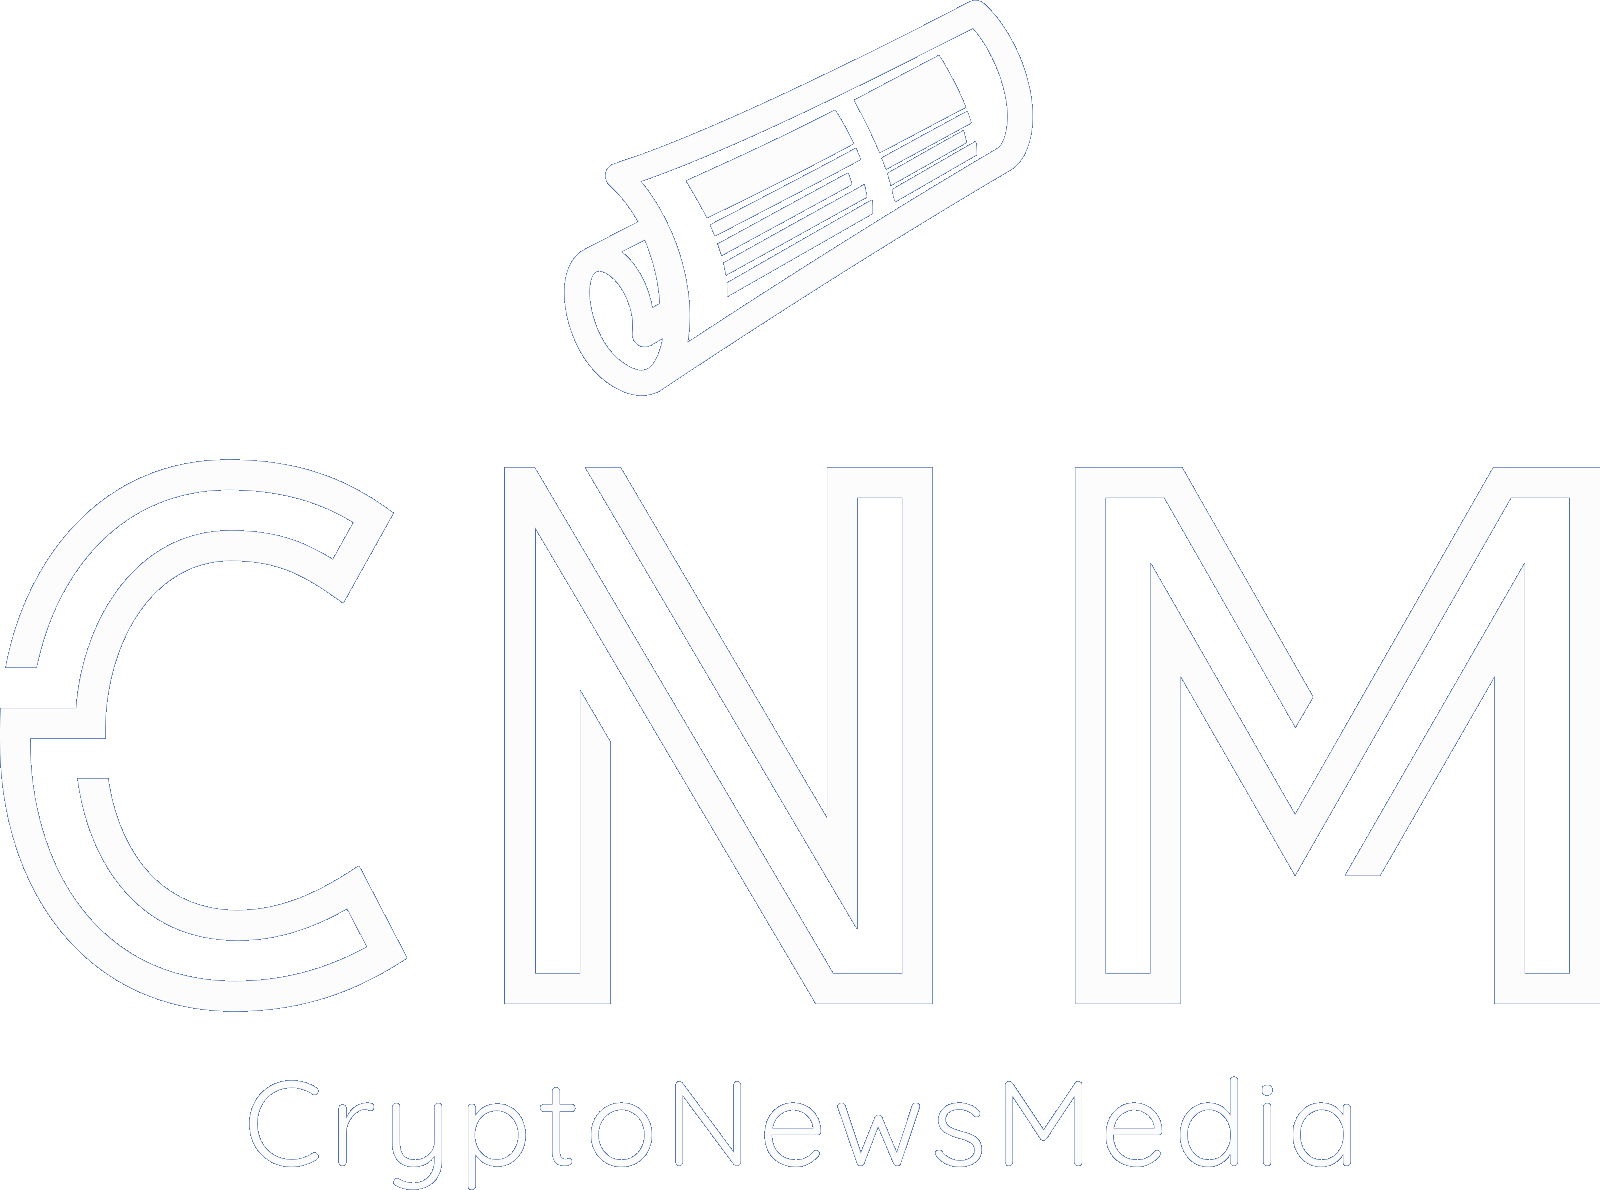 CRYPTO NEWS MEDIA